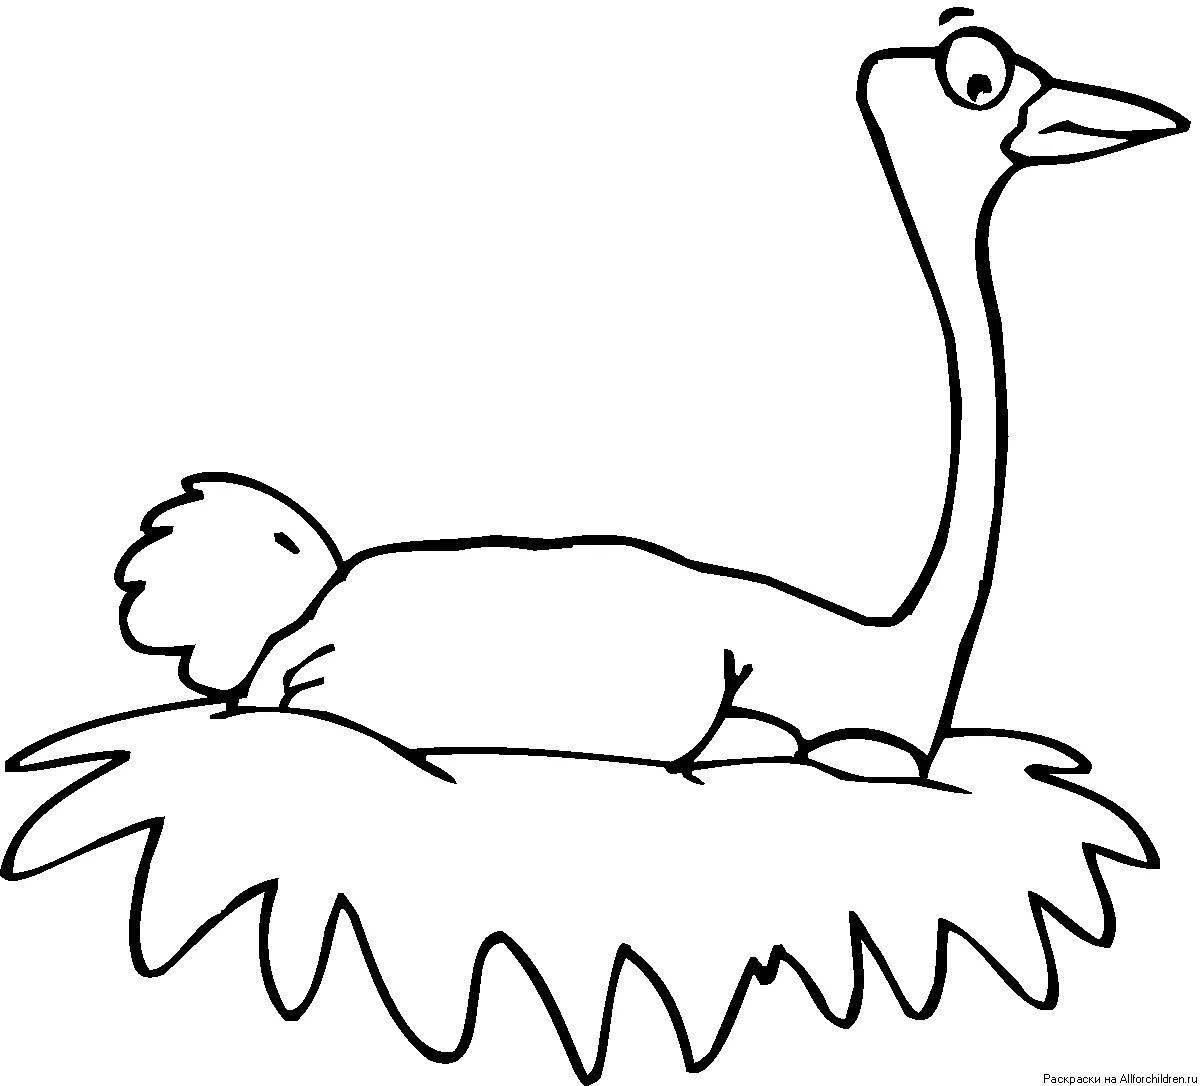 Милая раскраска страуса для детей